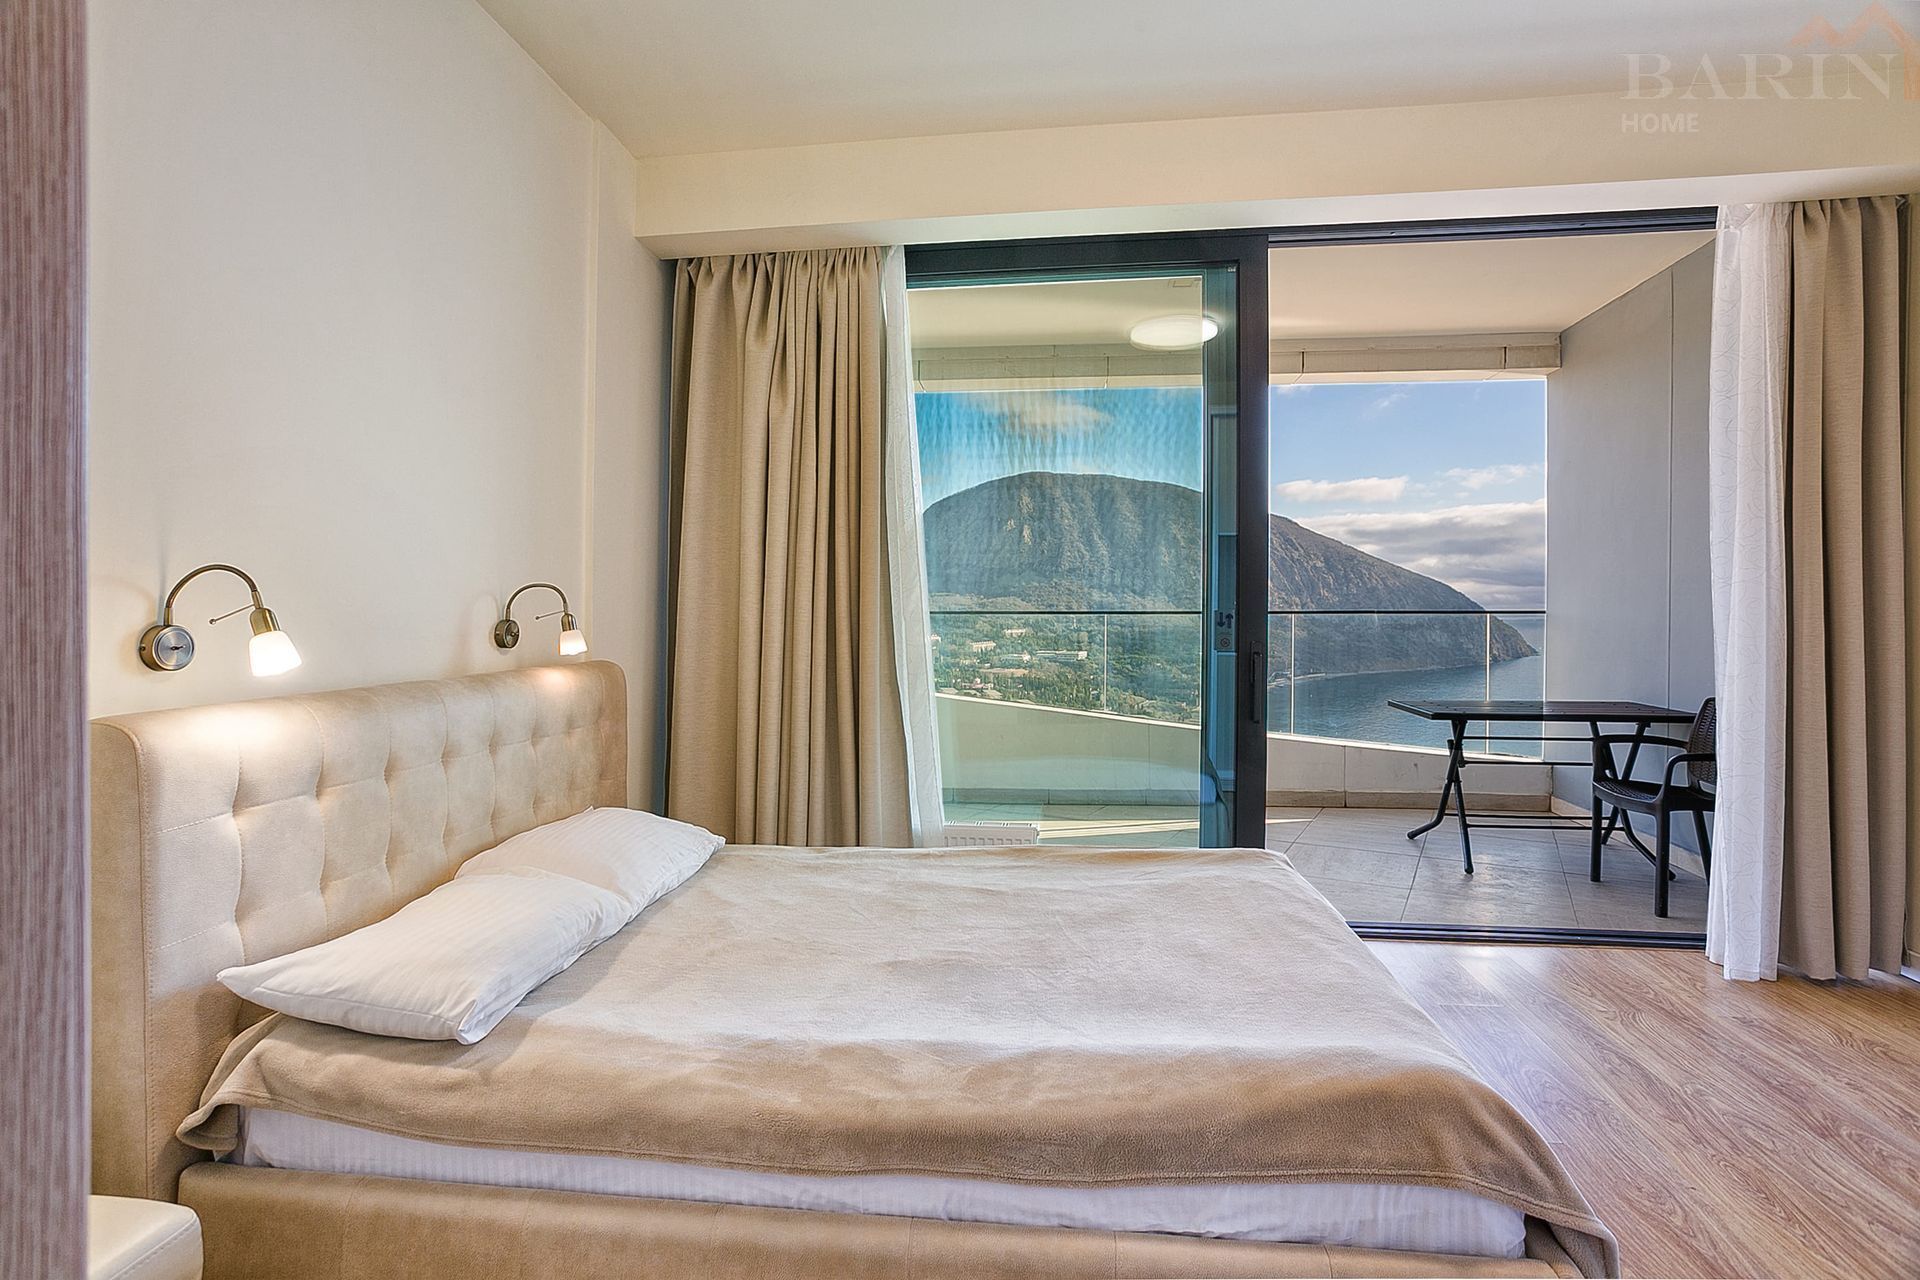 Продаётся видовая трёхкомнатная  квартира 112 м2 в комплексе бизнес класса «Гурзуф Ривьера» с потрясающими видами на знаменитую гору Аю-Даг и бескрайнее море!